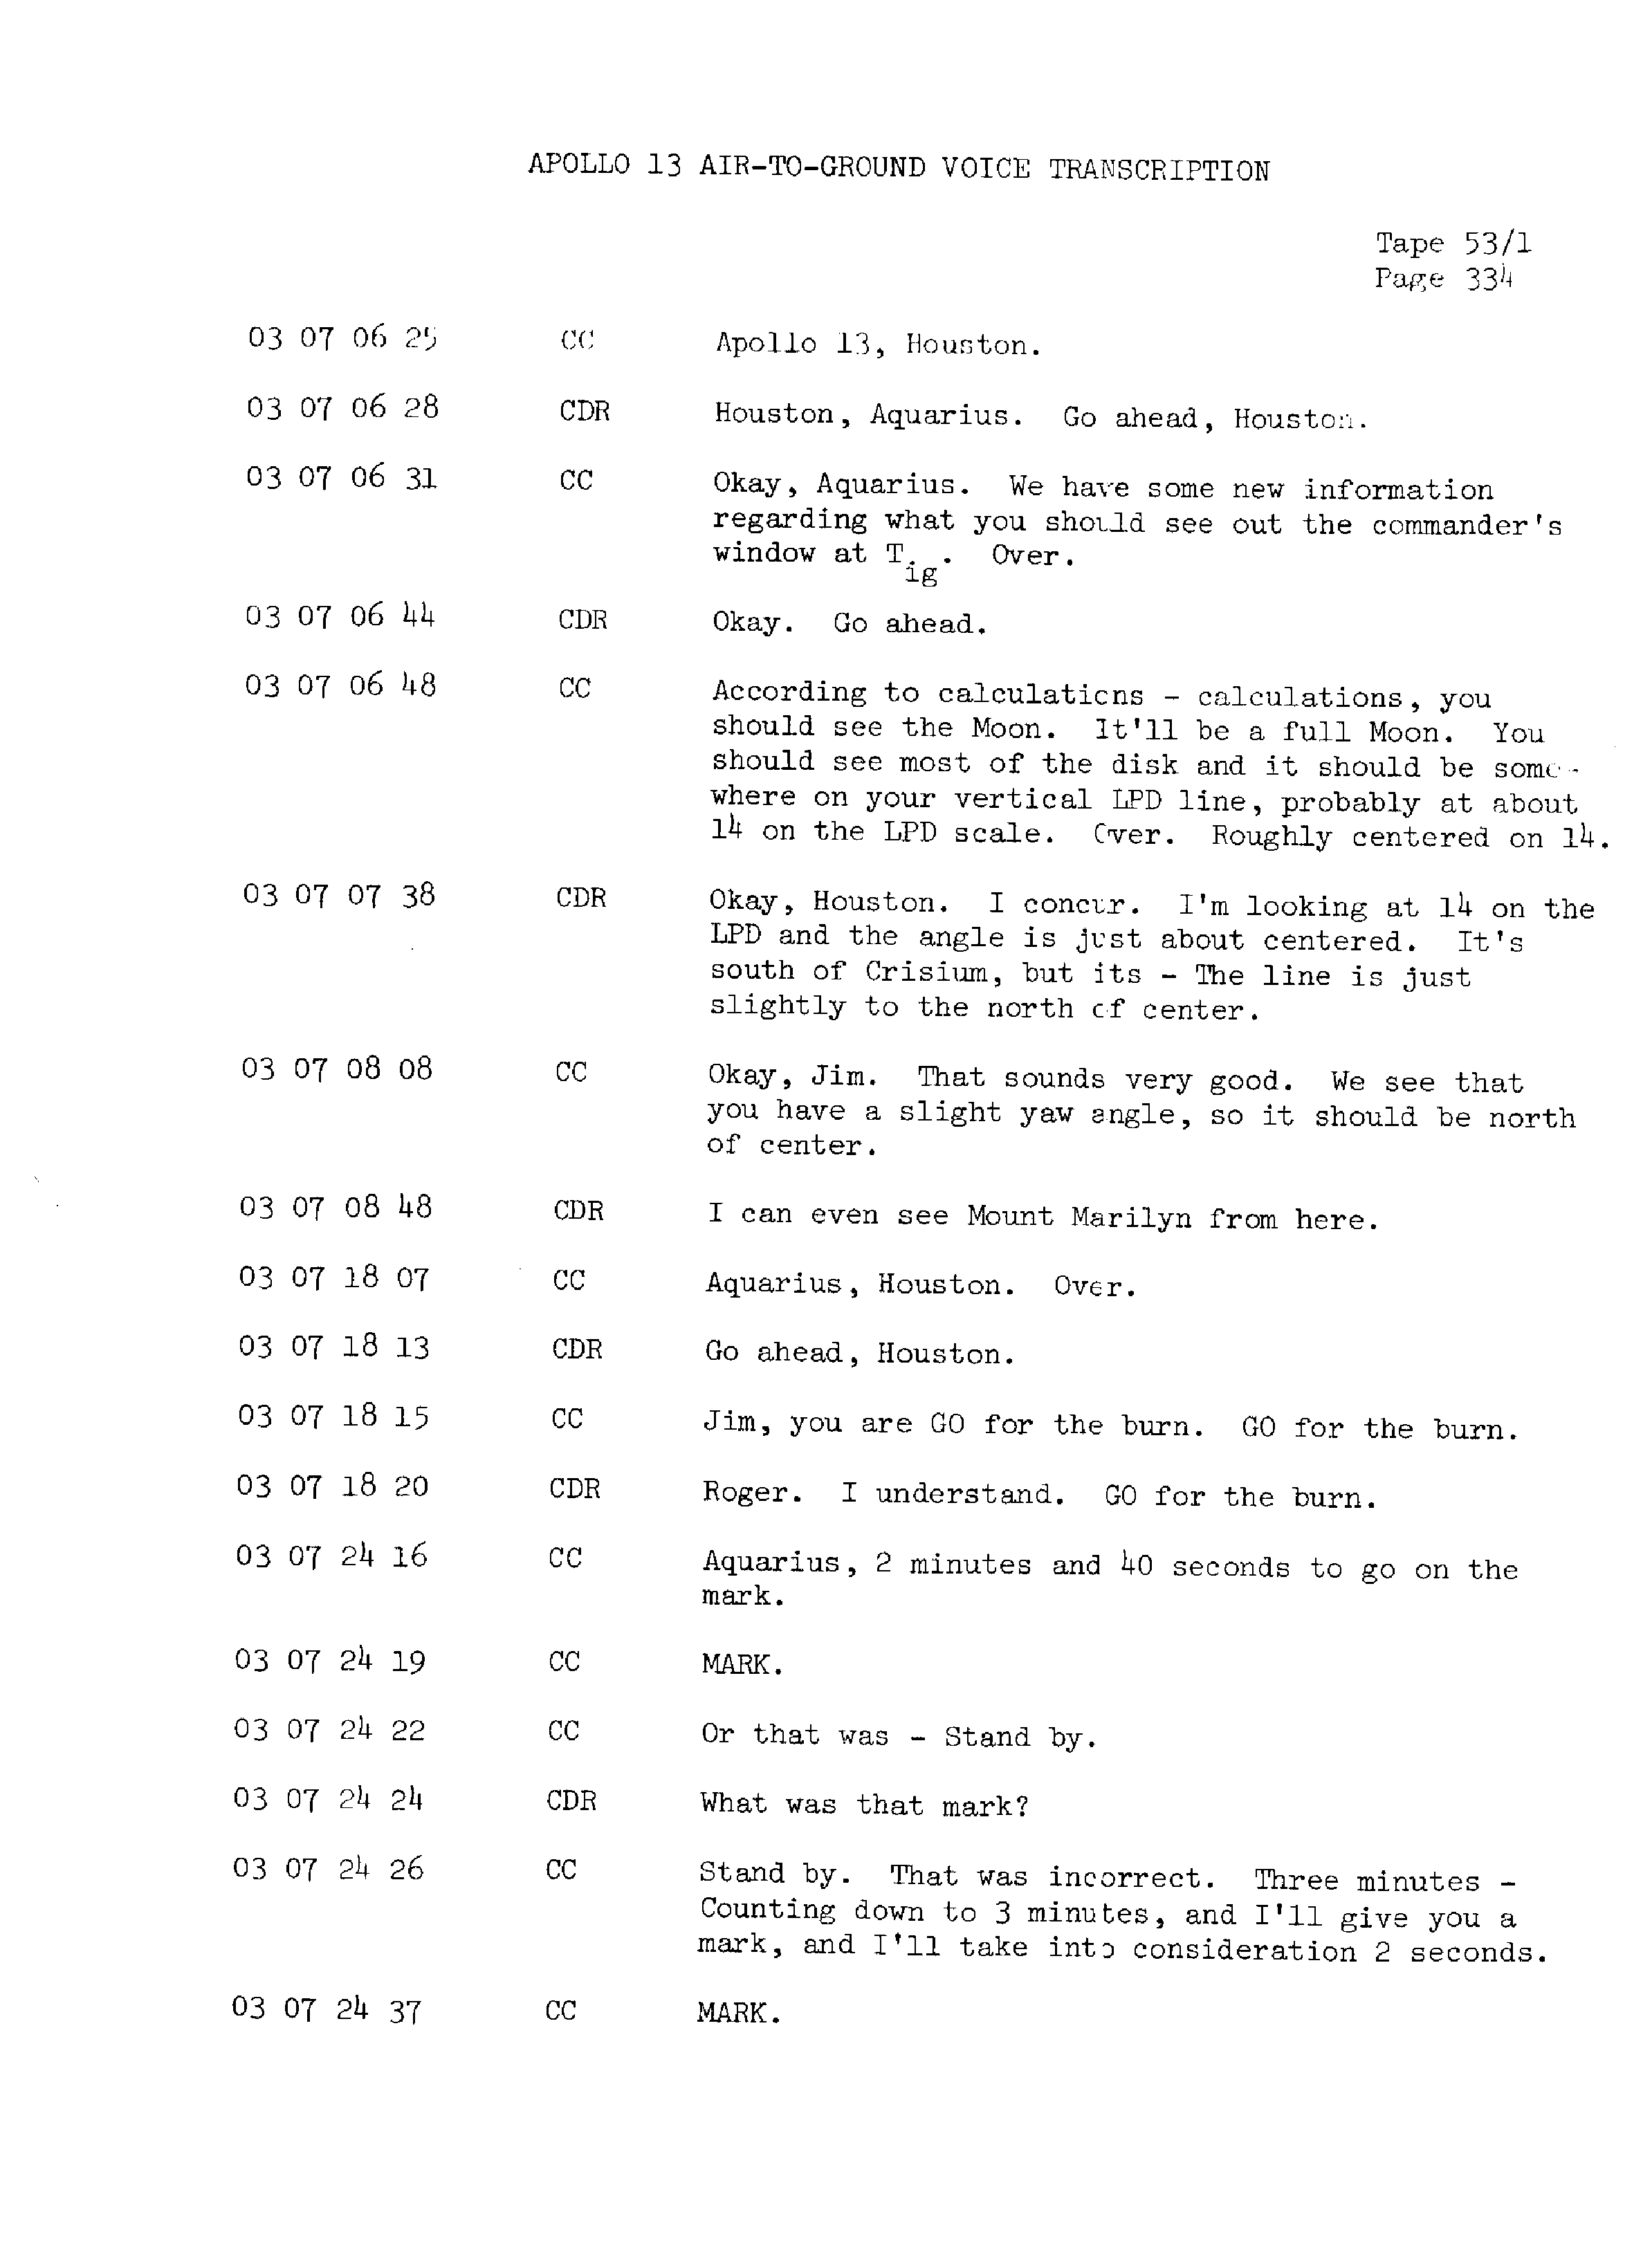 Page 341 of Apollo 13’s original transcript